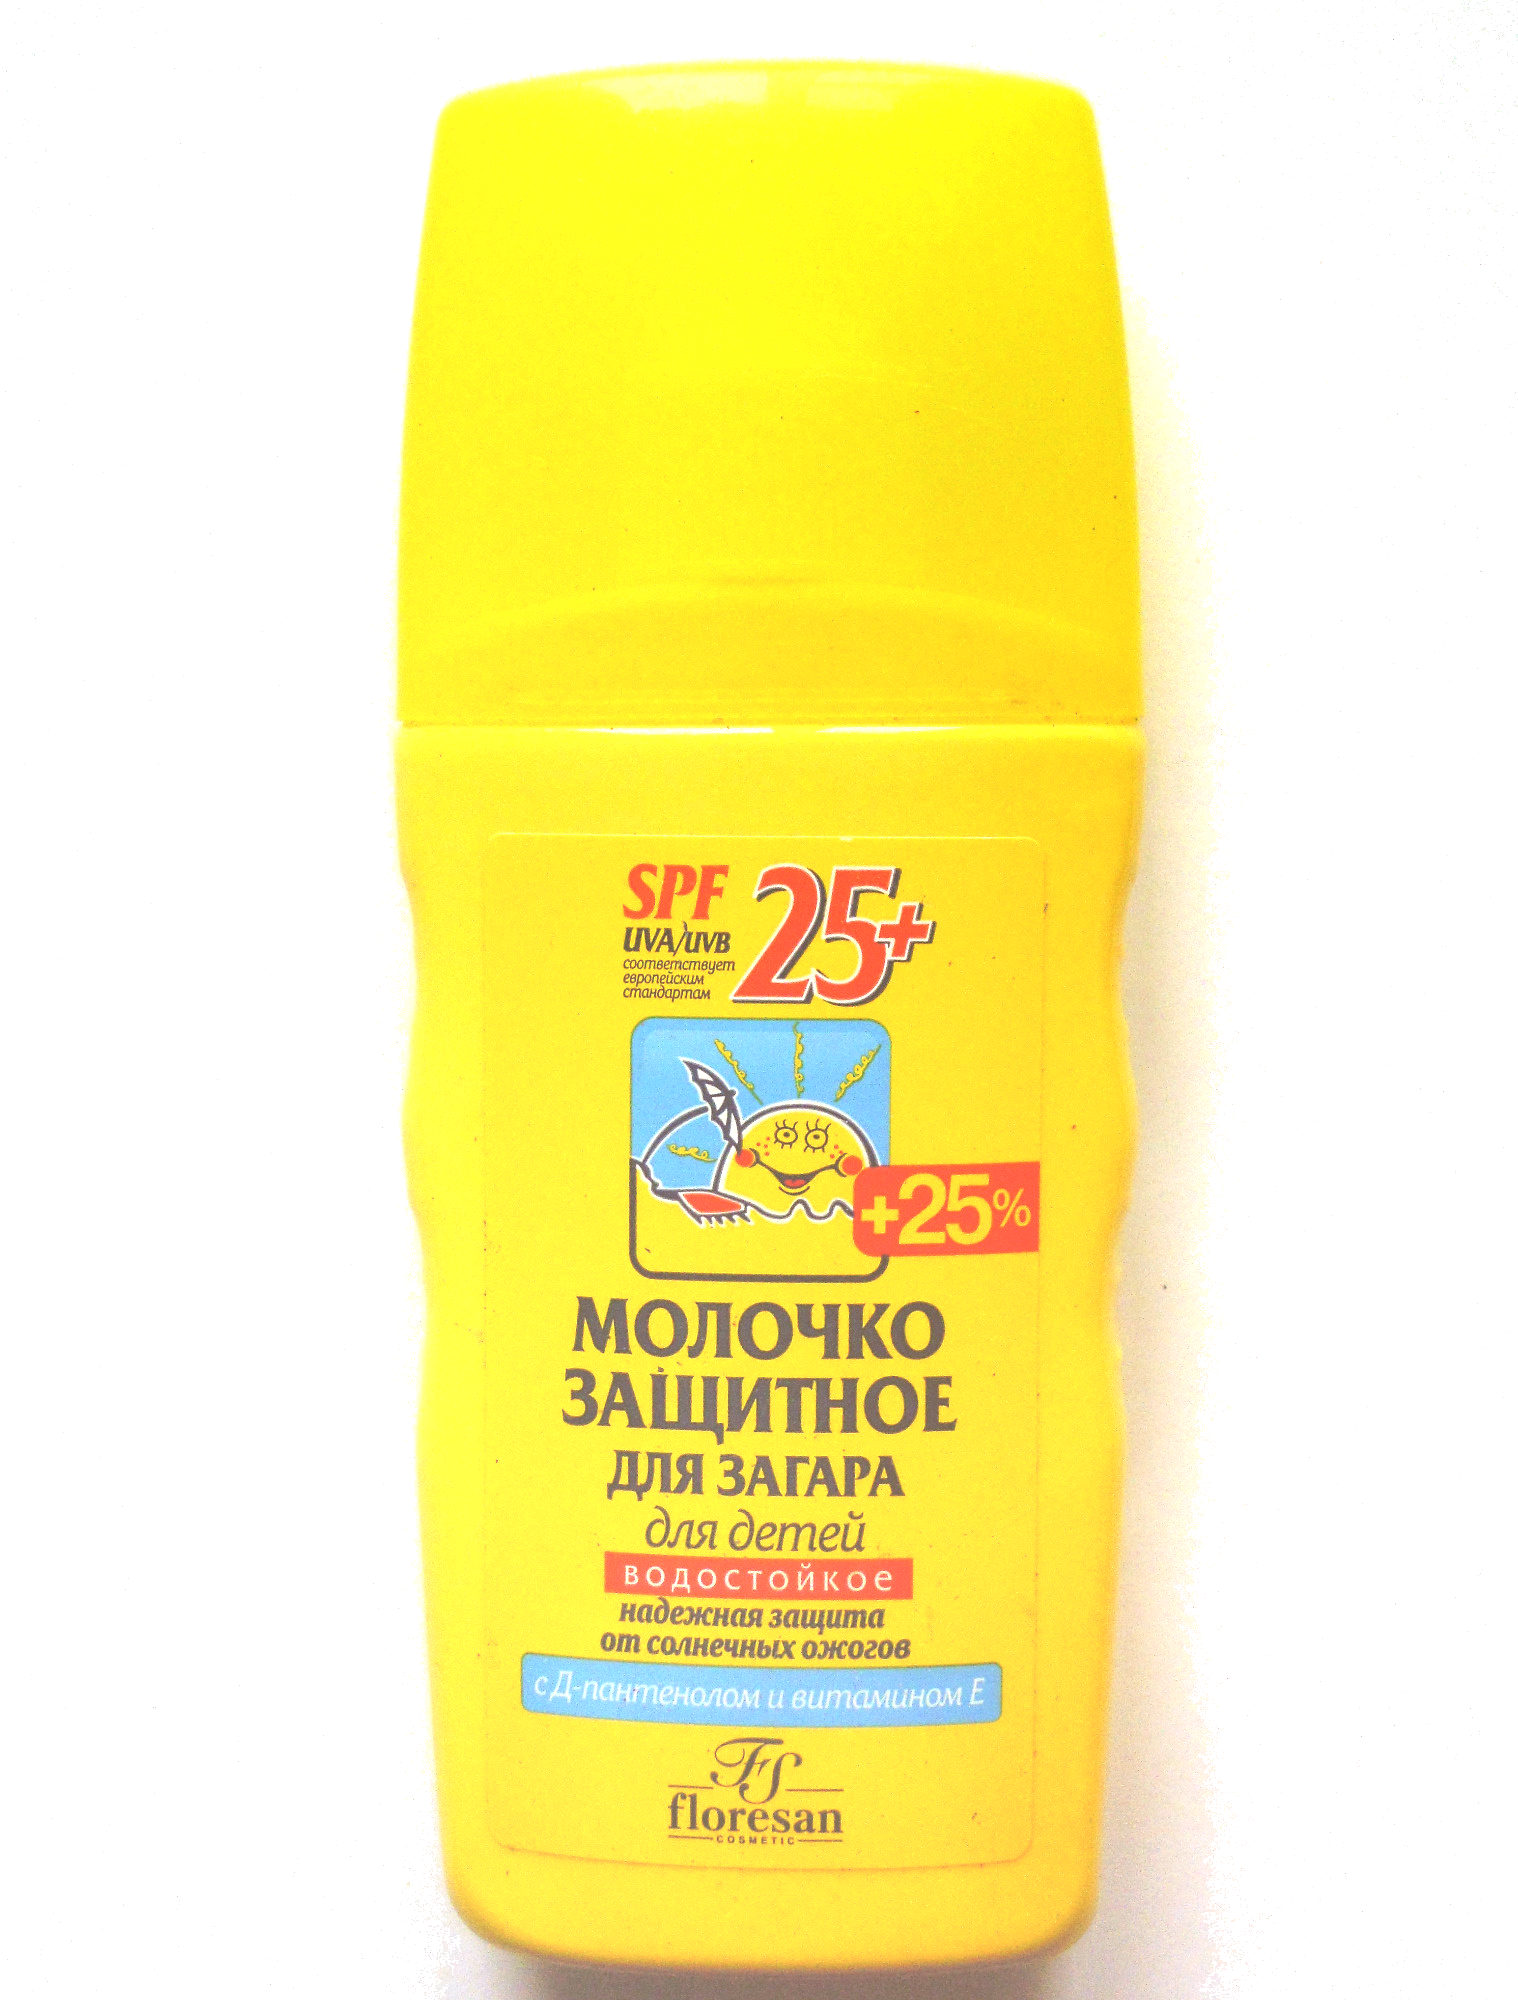 Молочко защитное для загара для детей - Produkto - ru